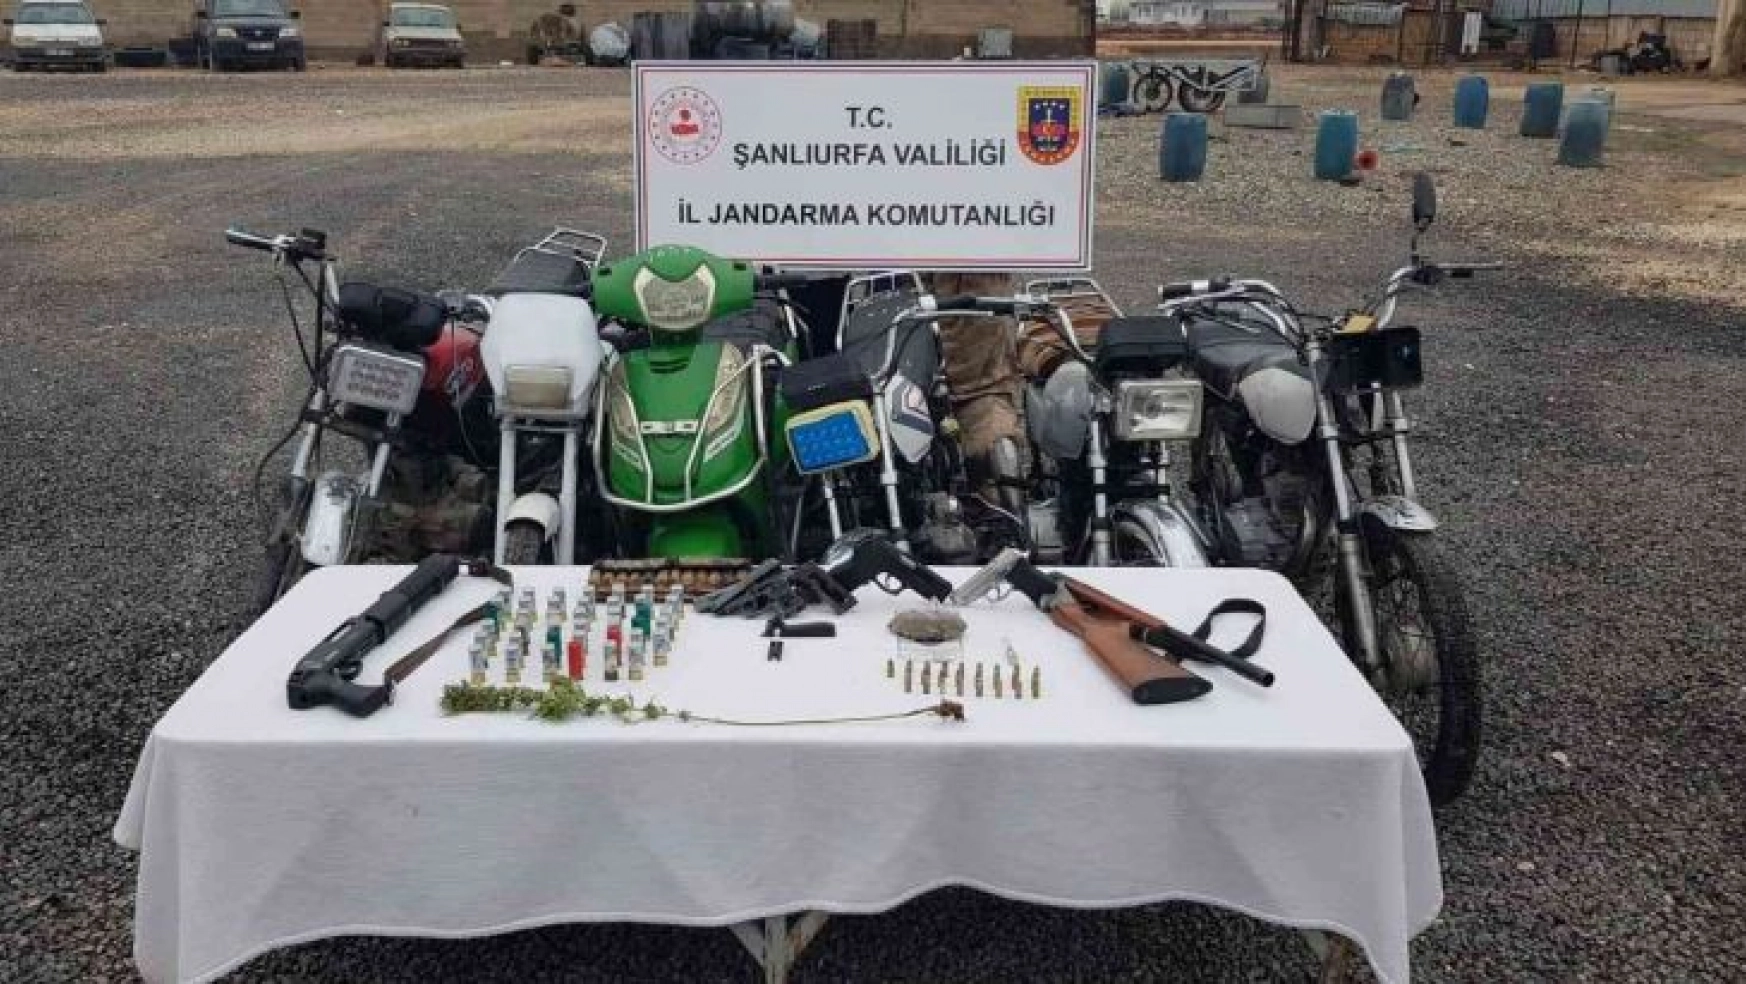 Şanlıurfa'da motosiklet hırsızı yakalandı